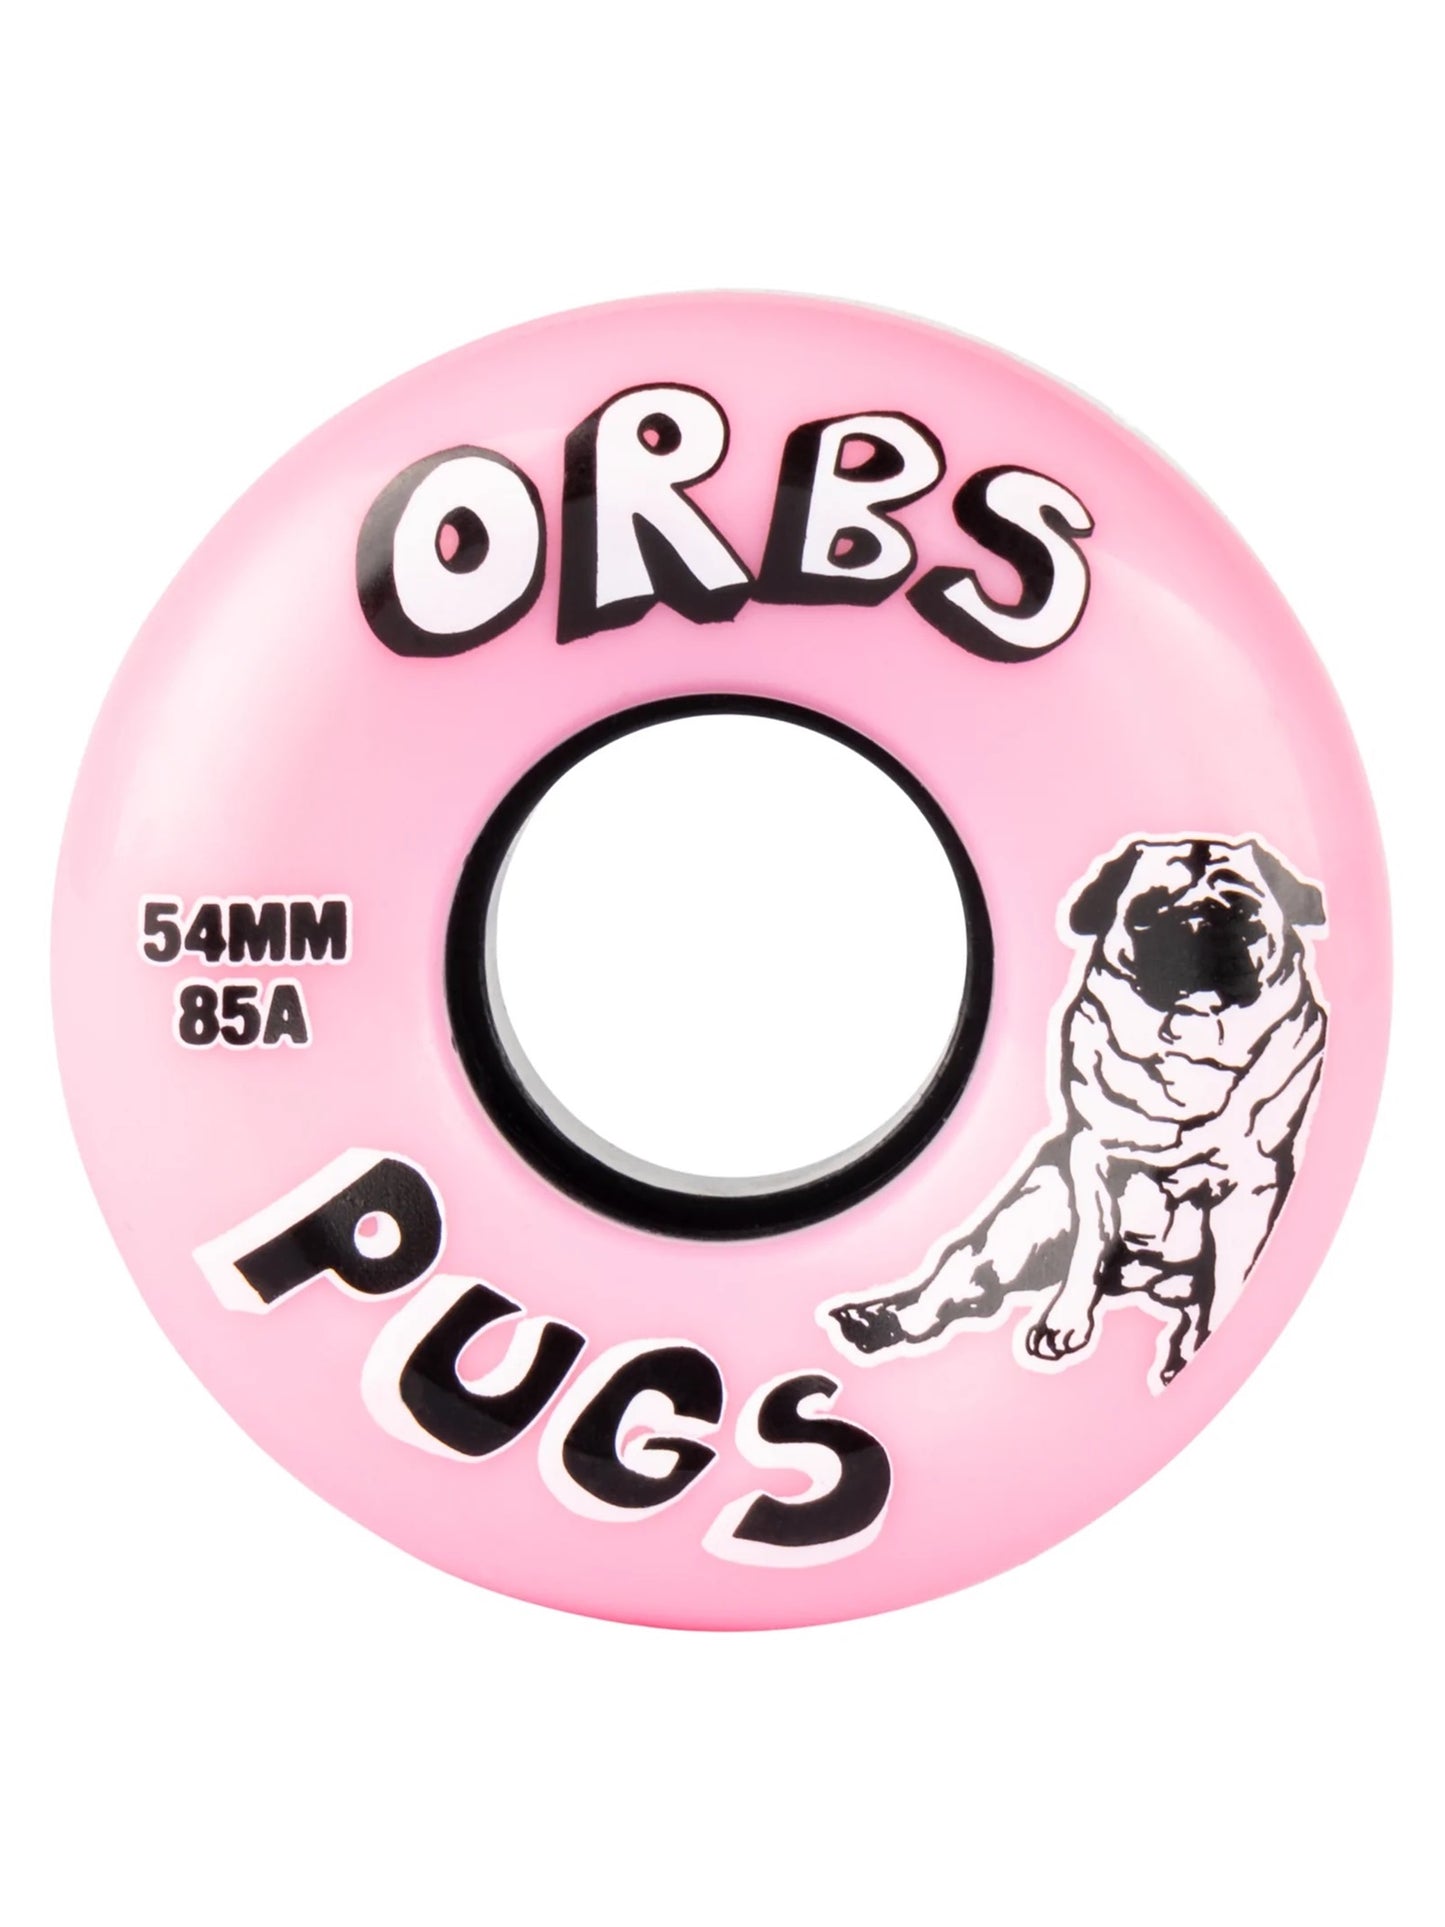 ORBS Pugs Wheels 54mm - Pink